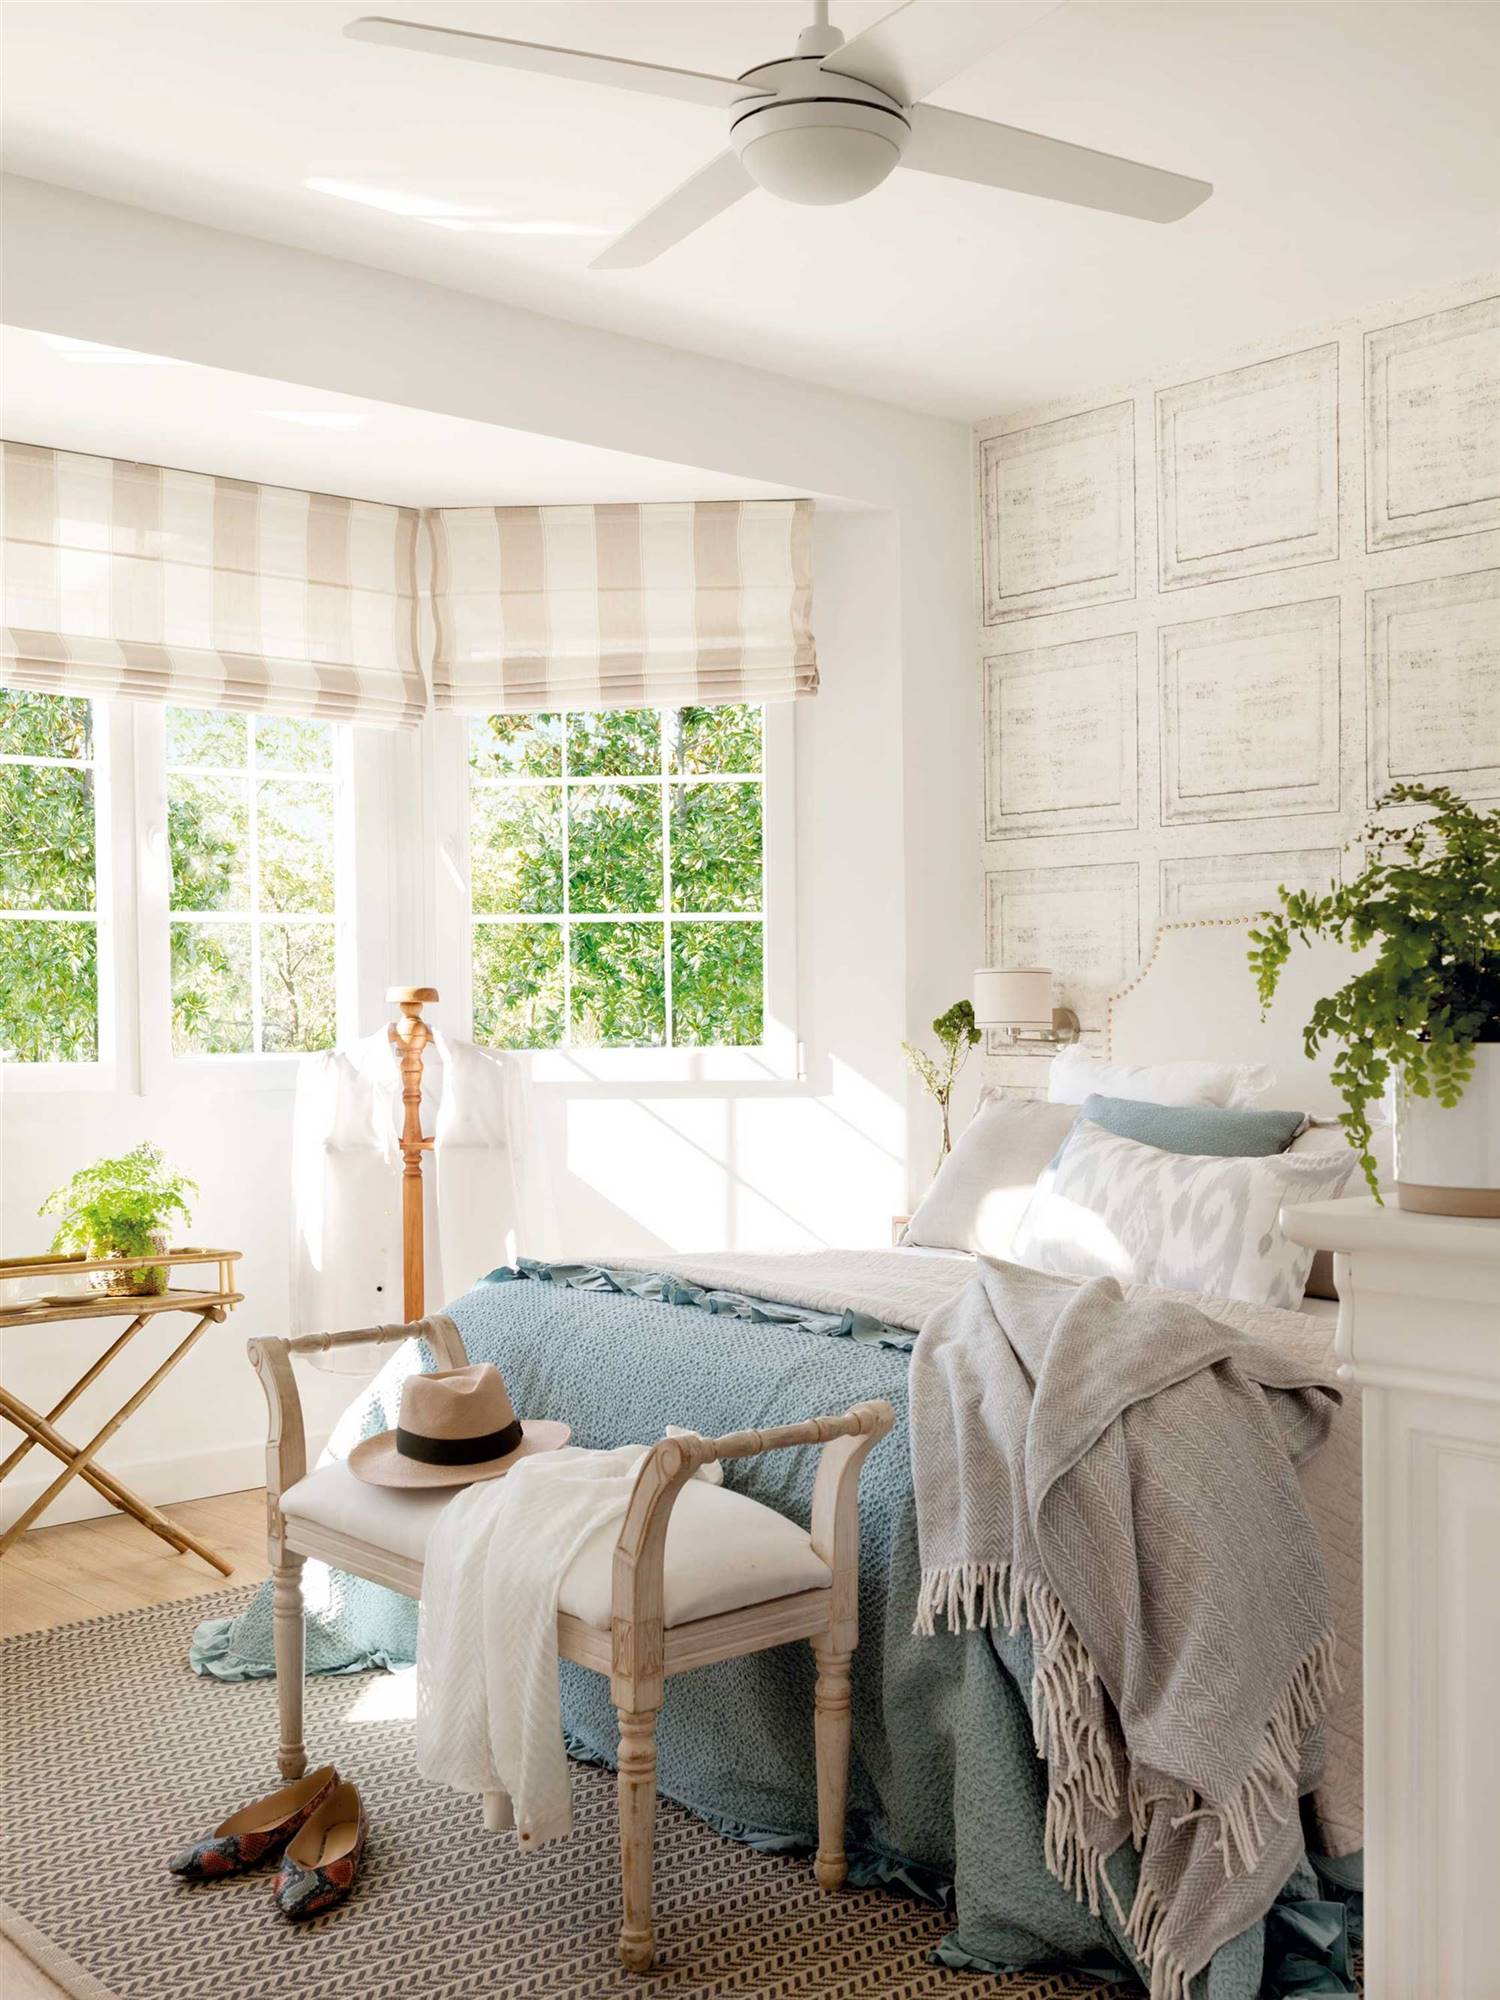 Dormitorio de verano de estilo clásico con papel pintado en la pared del cabecero y ropa de cama azul y blanca. 